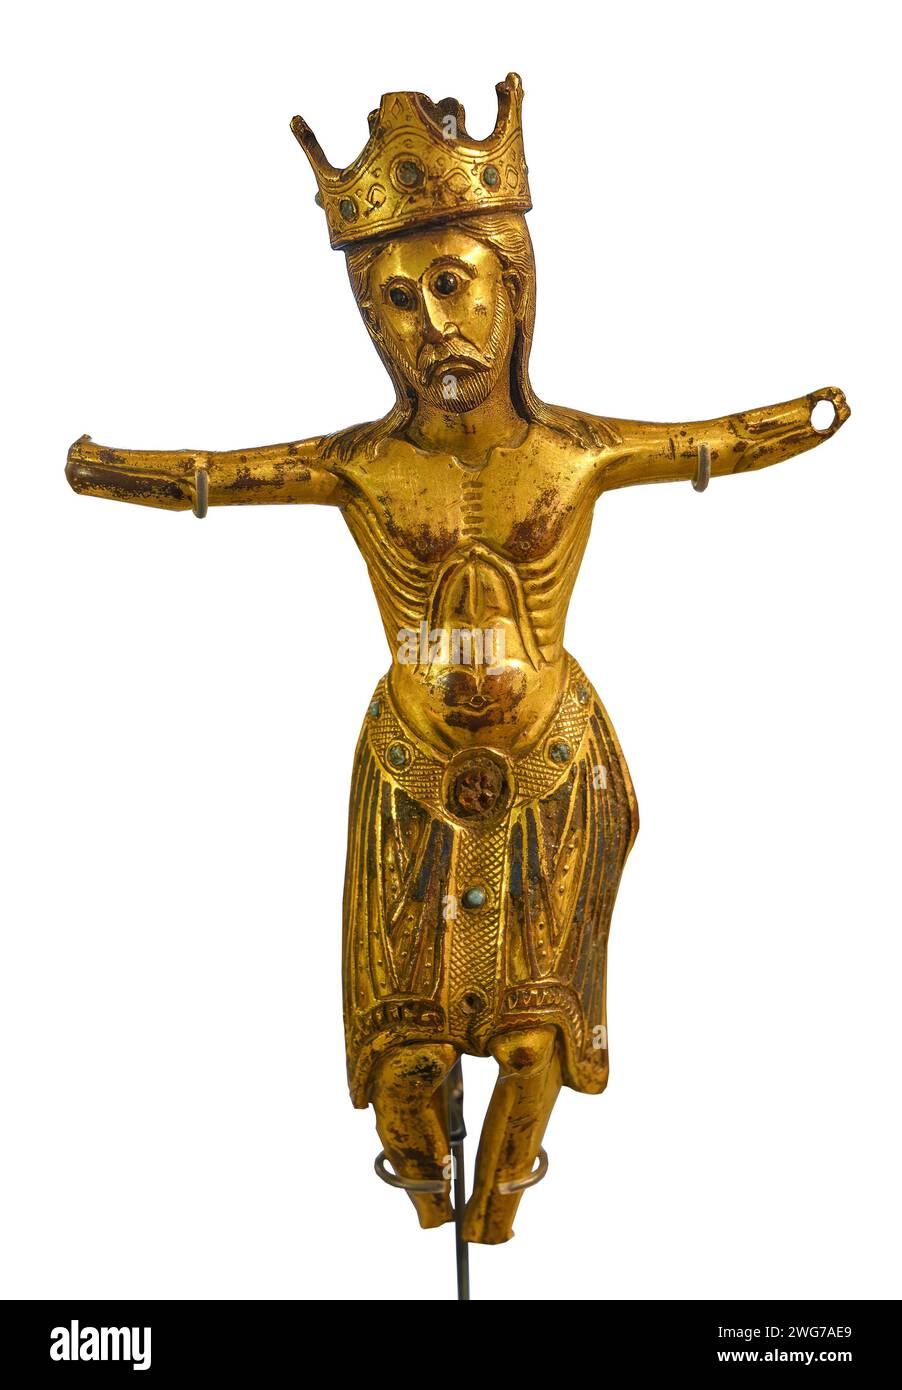 St Mary's Abbey Figur of Christ, Yorkshire Museum, York, North Yorkshire, England, UK. Datiert von 1200 bis 1300 n. Chr. Stockfoto